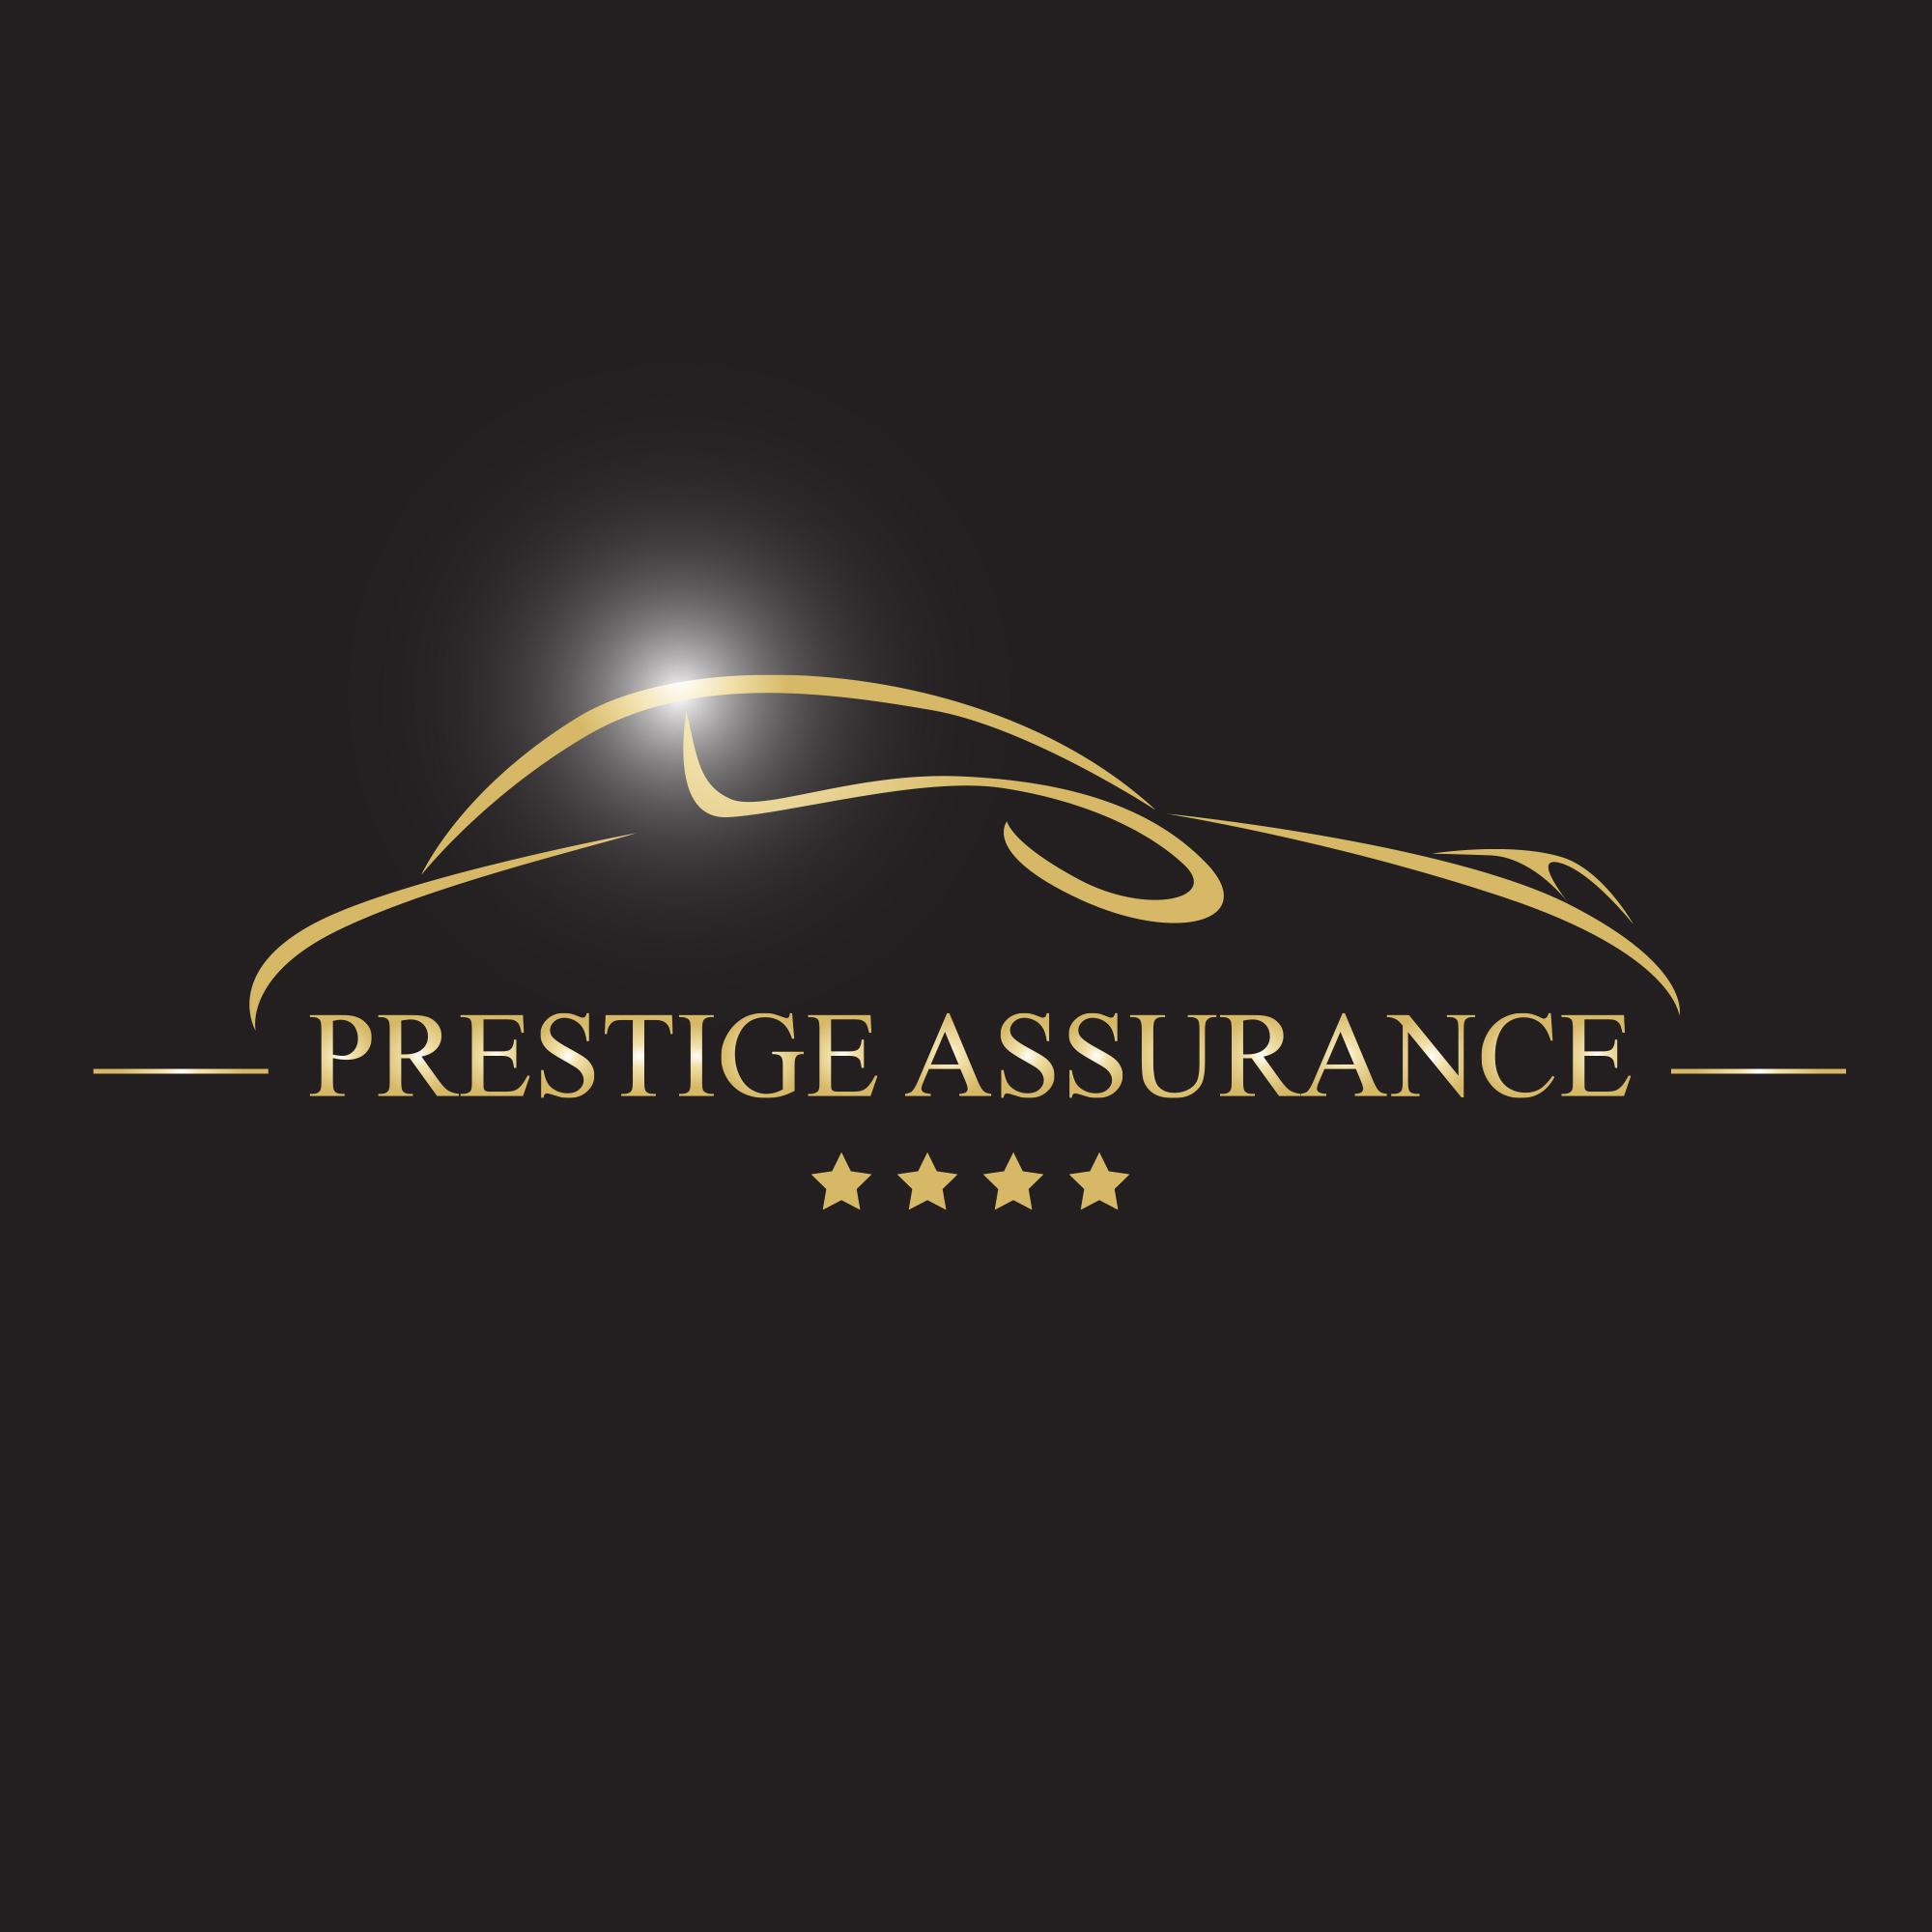 L’assurance au kilomètre à Bordeaux avec ma BMW X6 chez Prestige Assurance